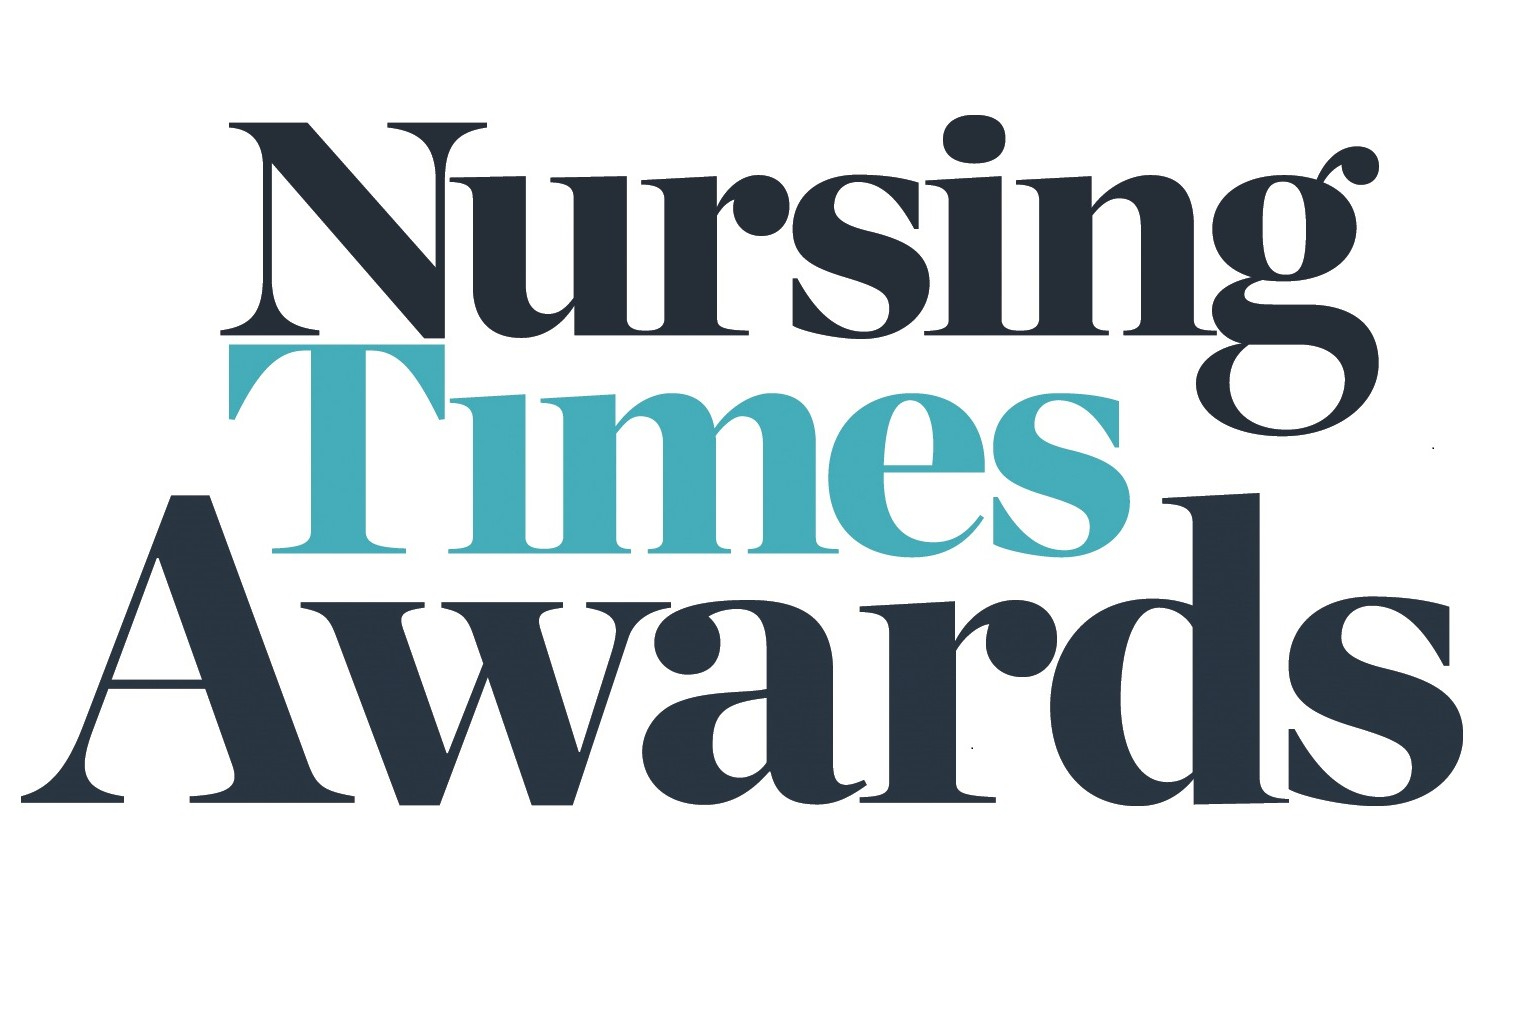 Nursing time awards logo.jpg